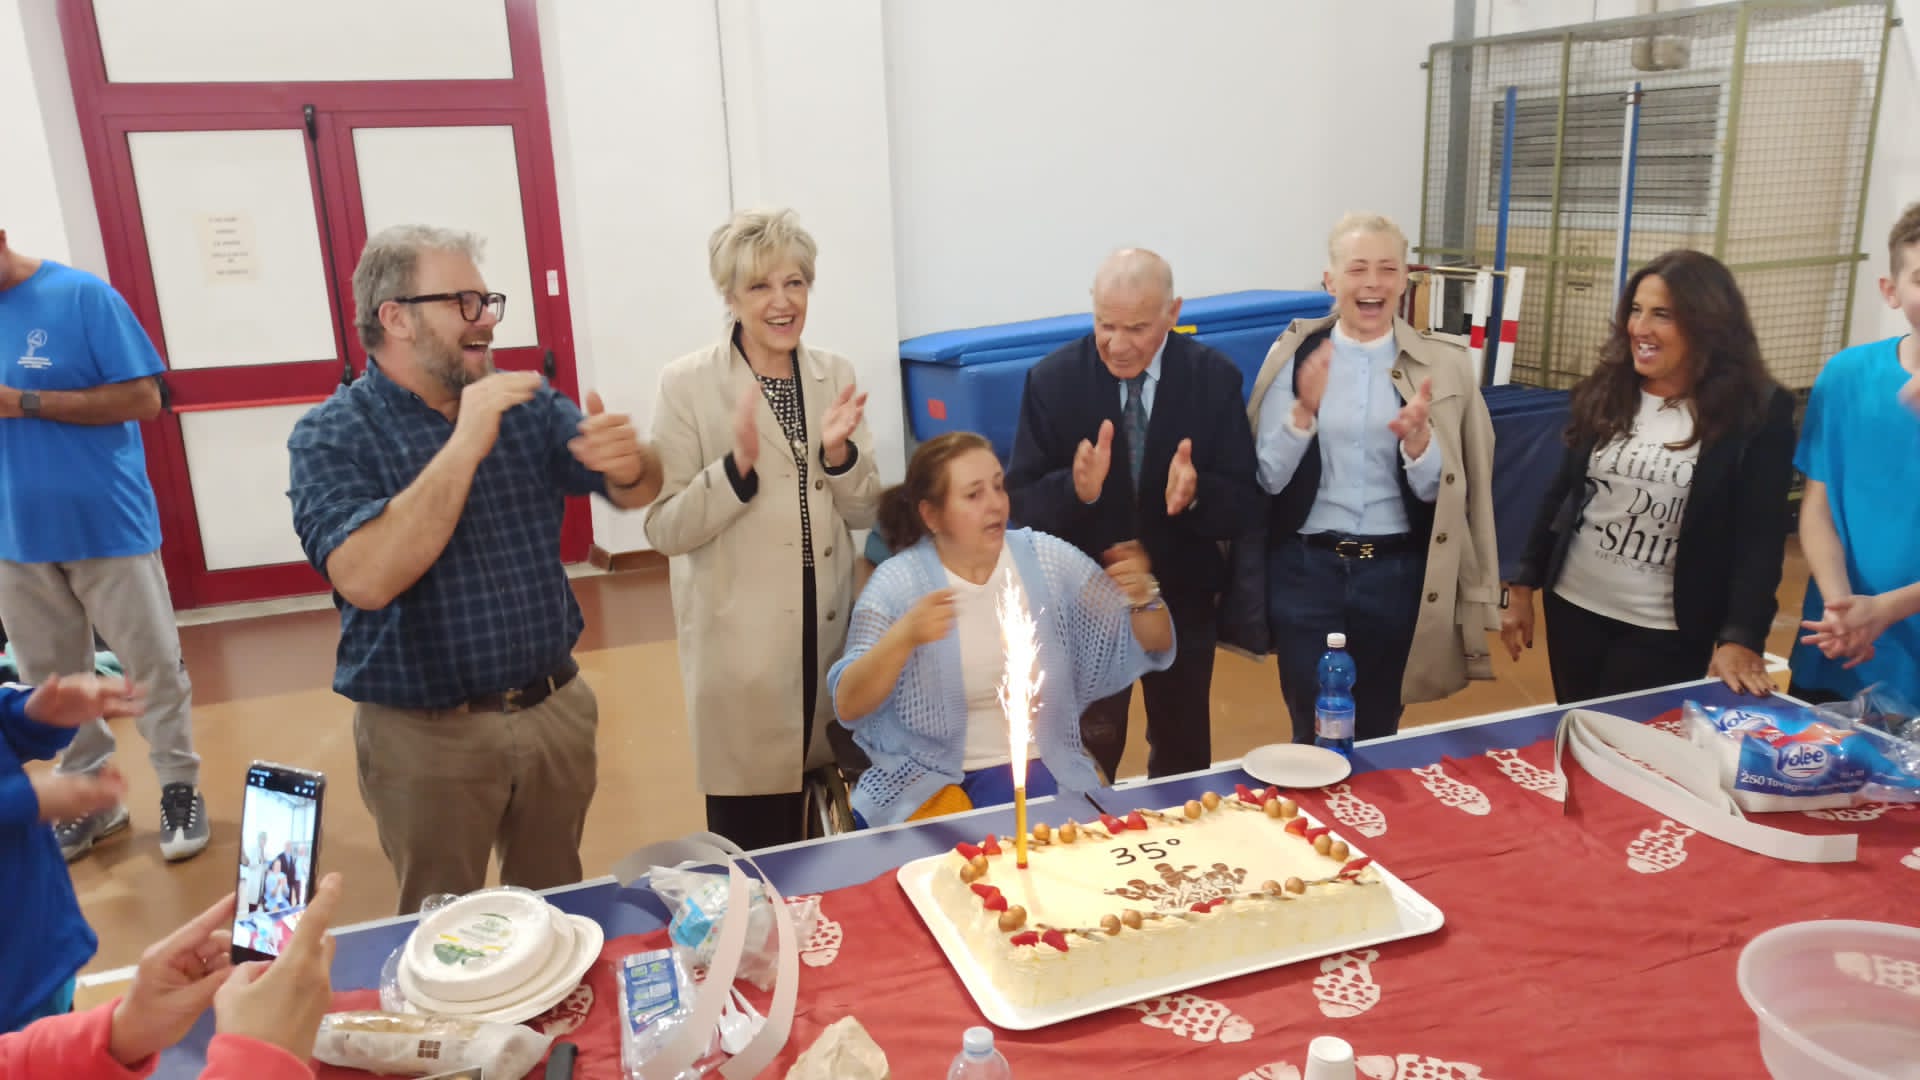 UPR Montemarciano la presidente Lucia Russo davanti alla torta per la festa dei 35 anni